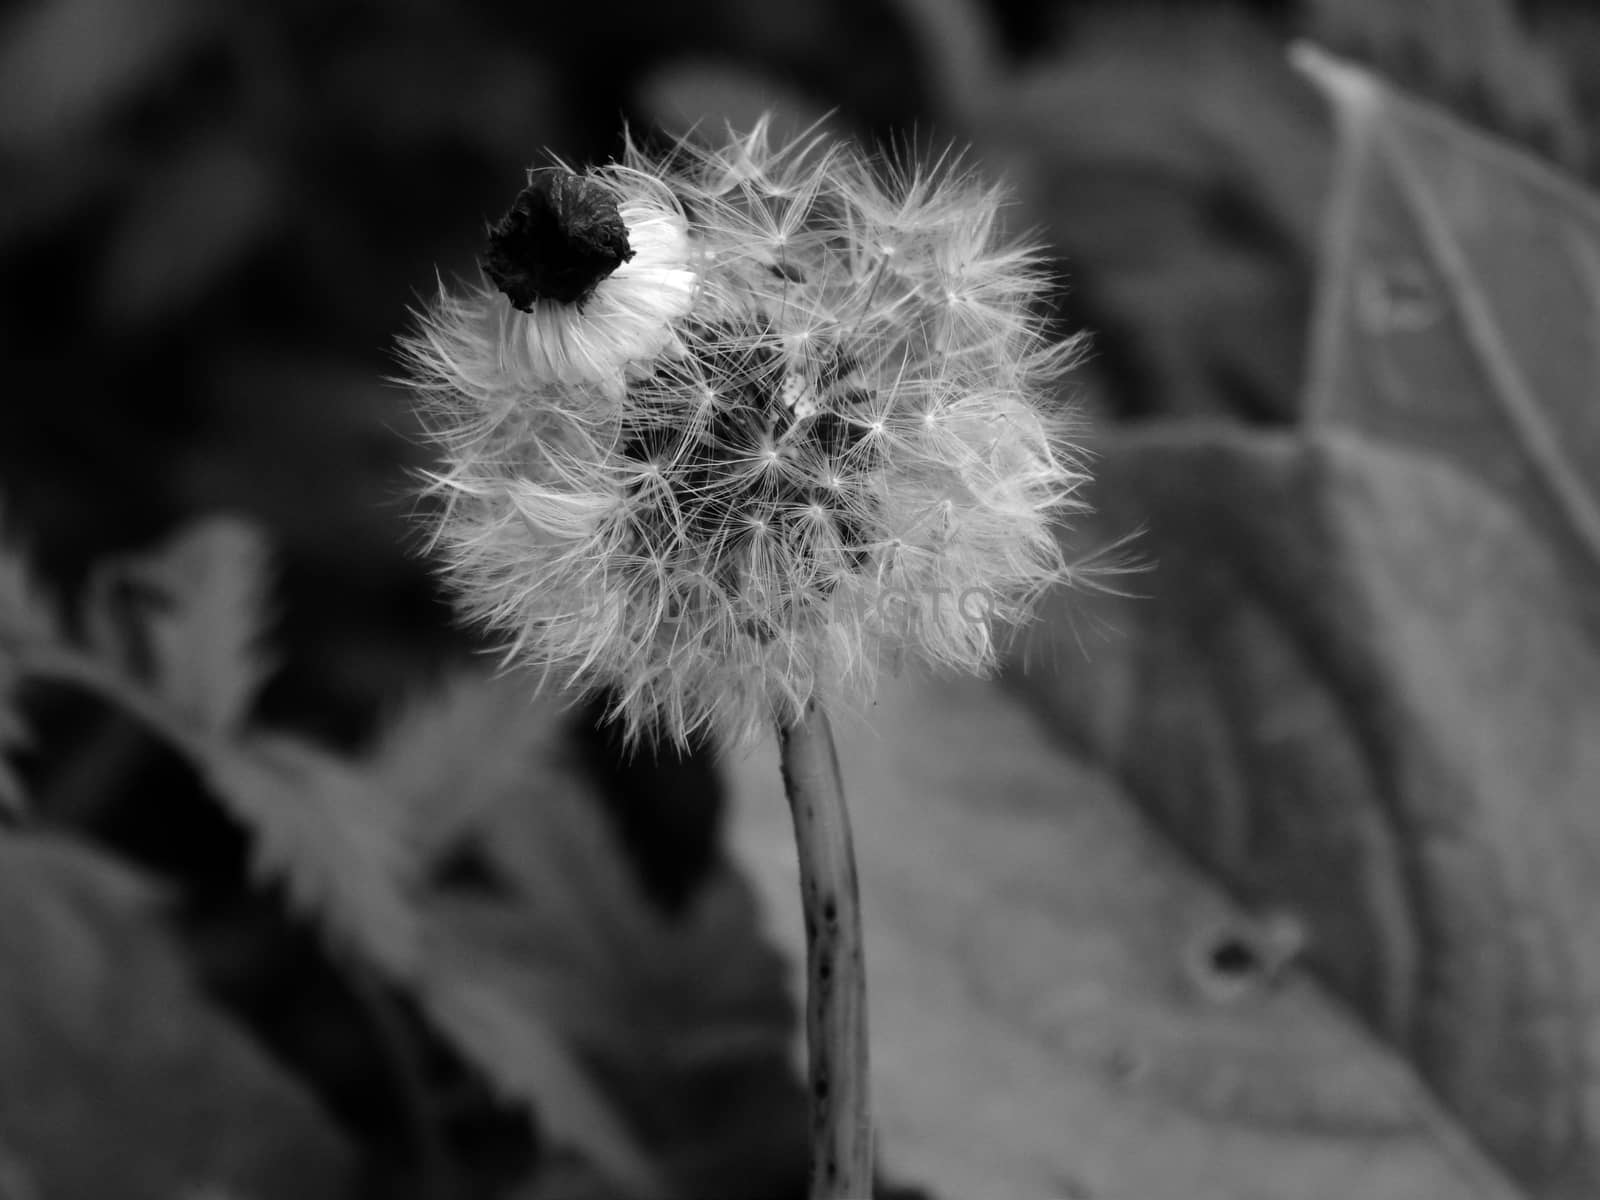 Dandelion in black and white by kimbelij